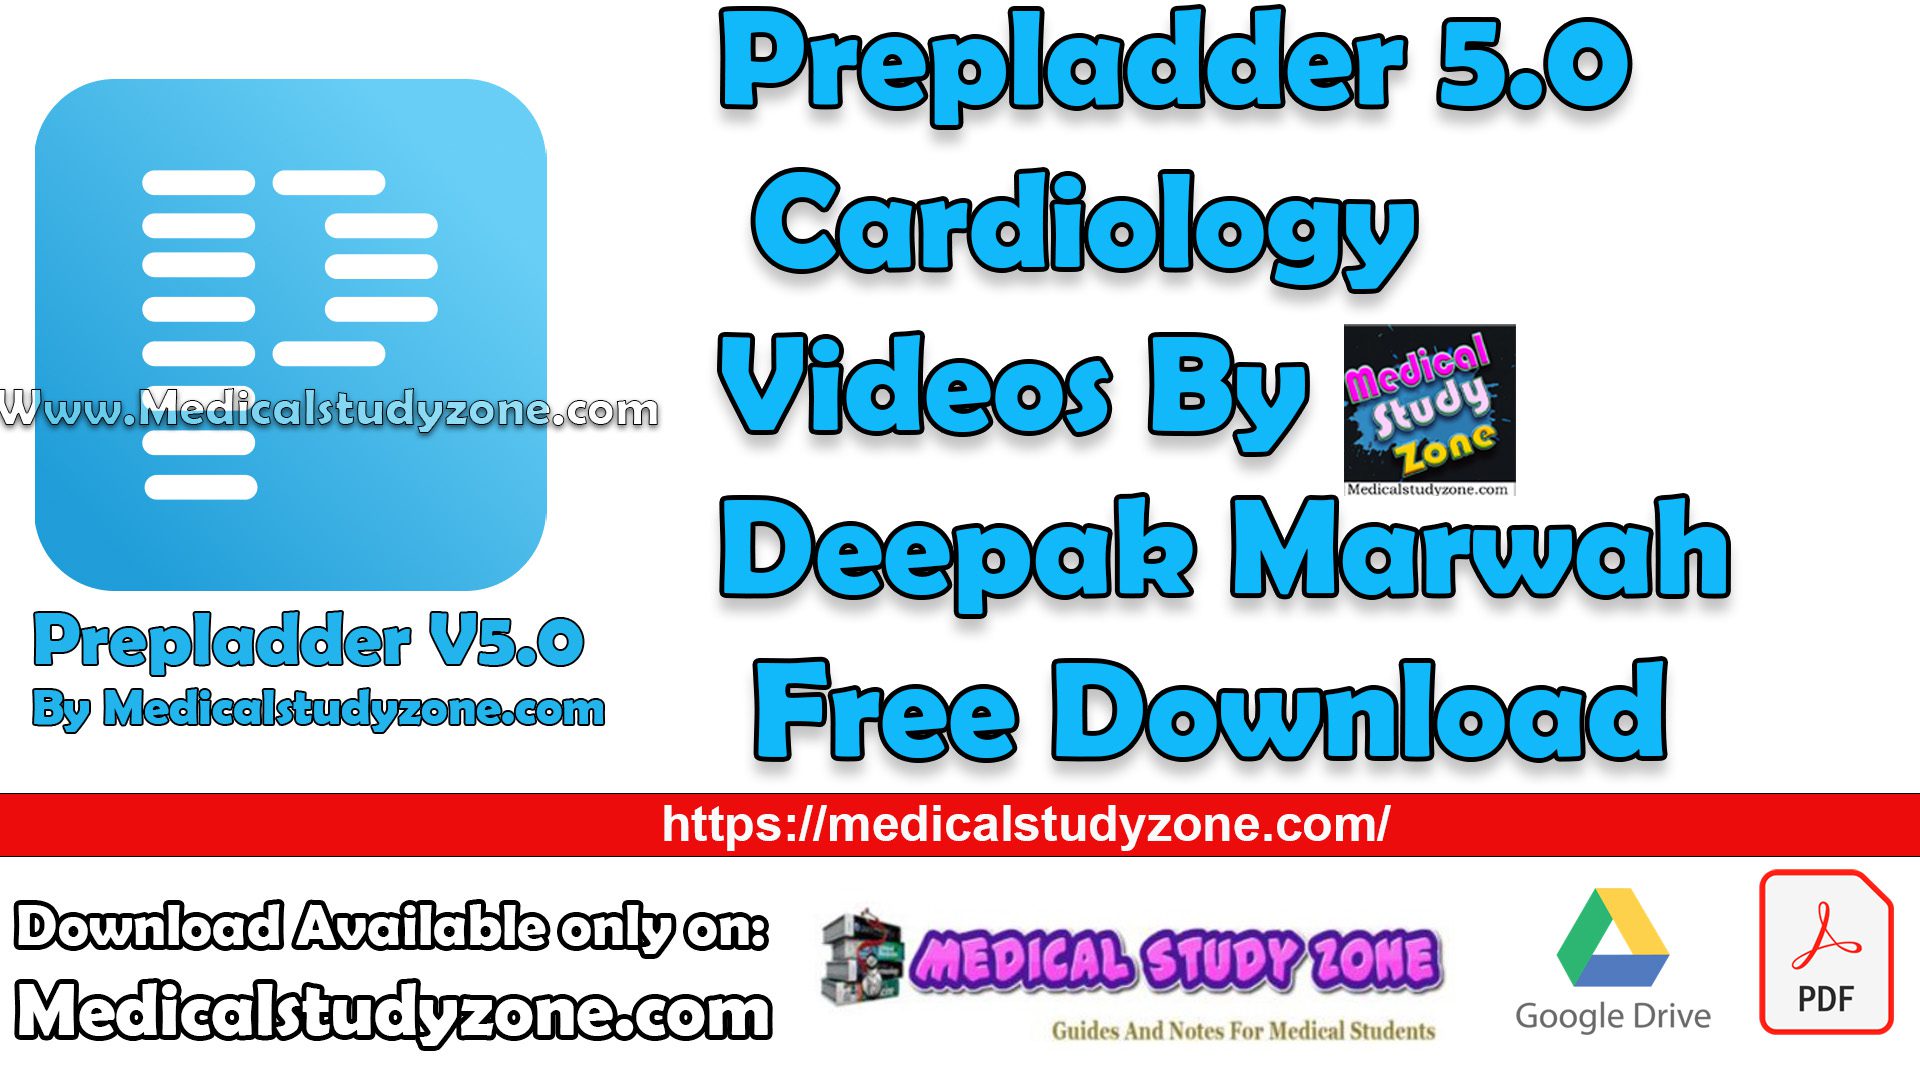 Prepladder 5.0 Cardiology Videos By Deepak Marwah Free Download